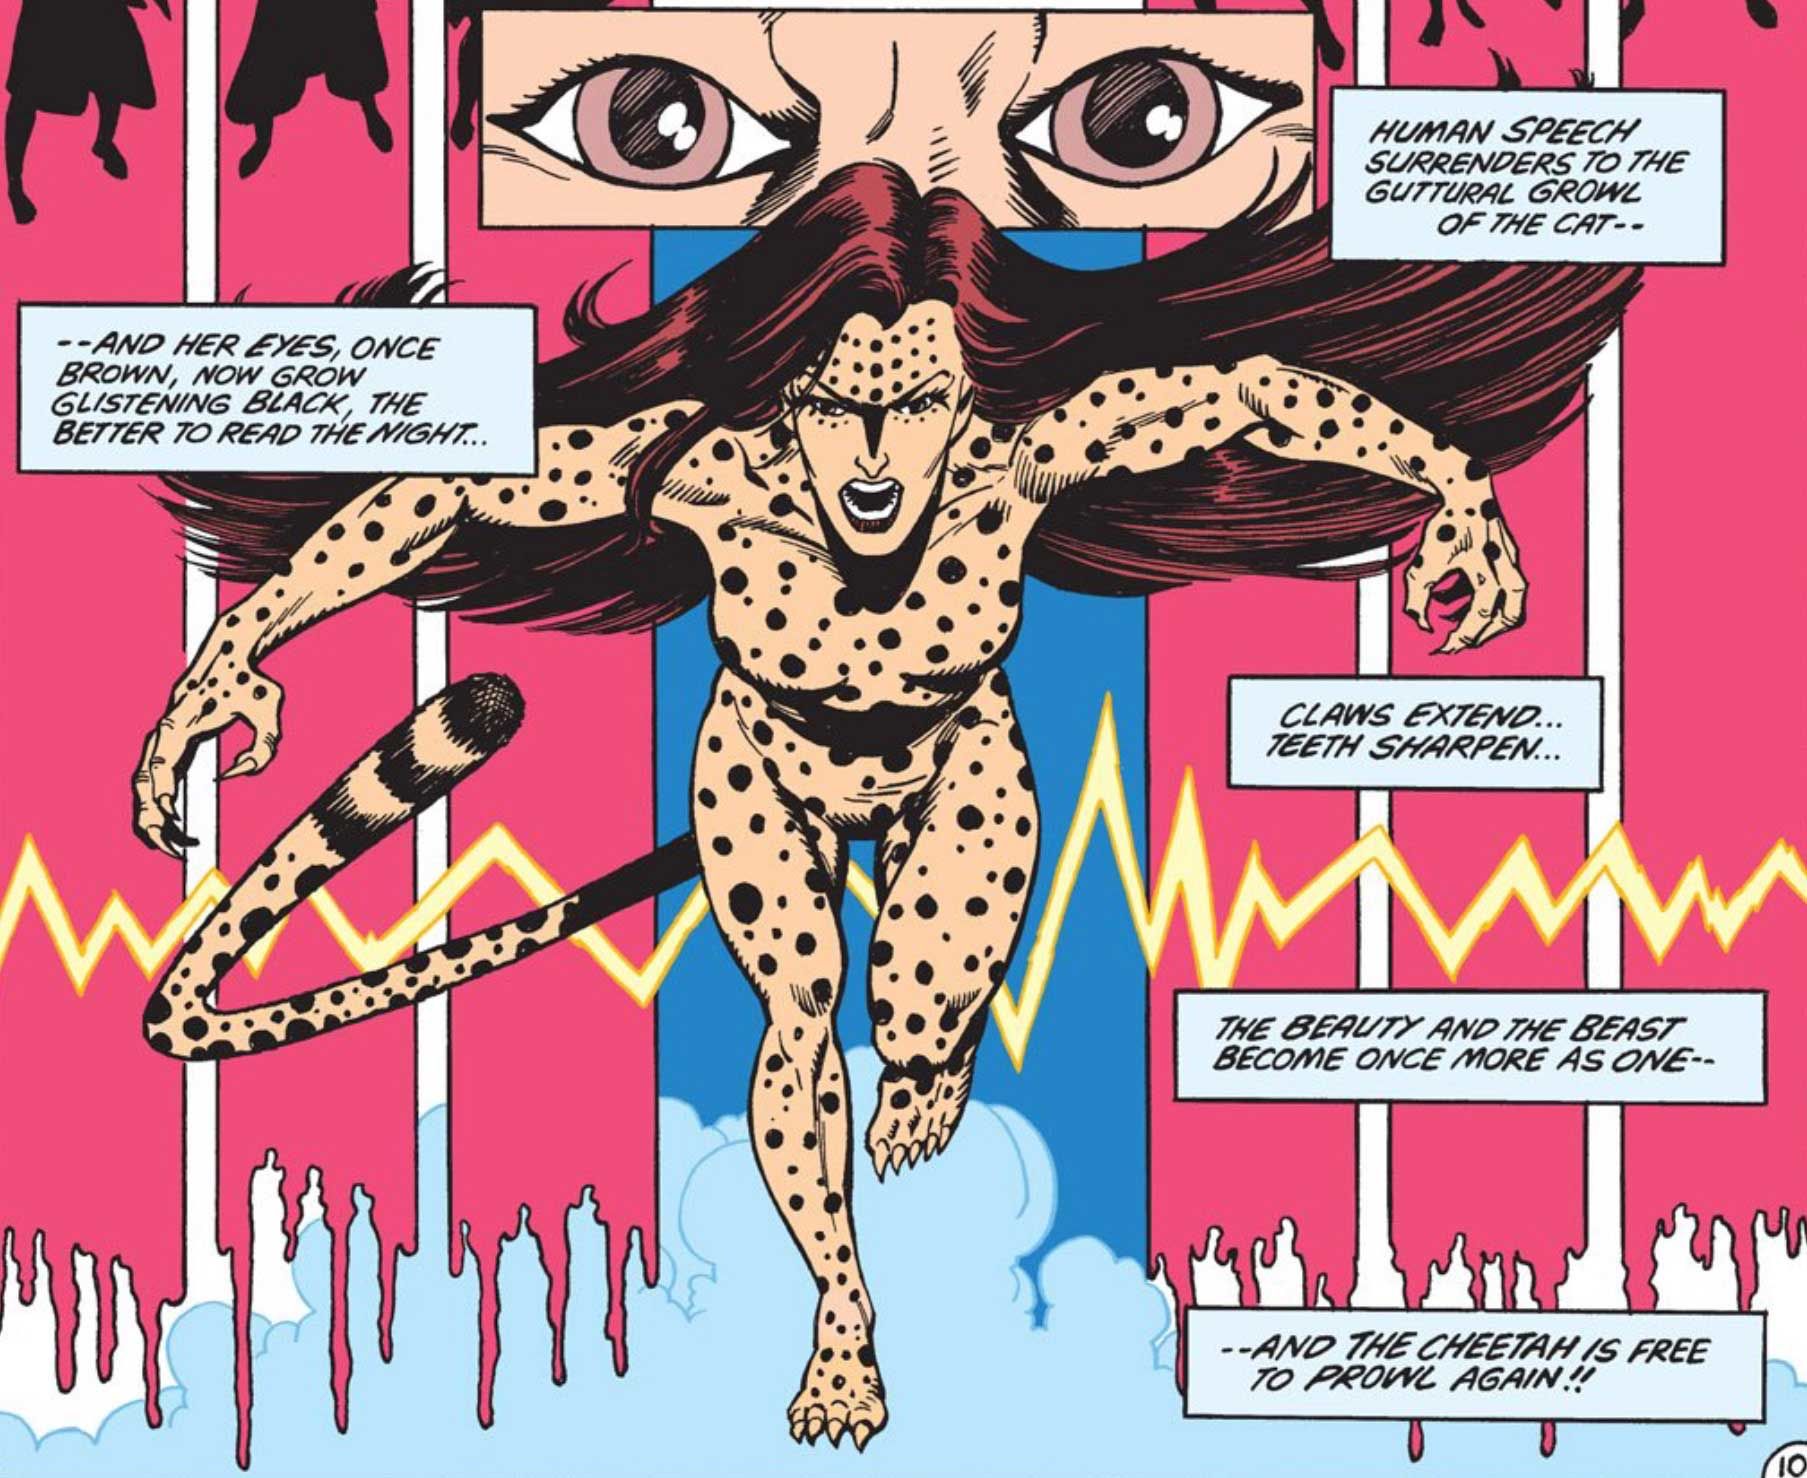 Post-Crisis Cheetah in Wonder Woman